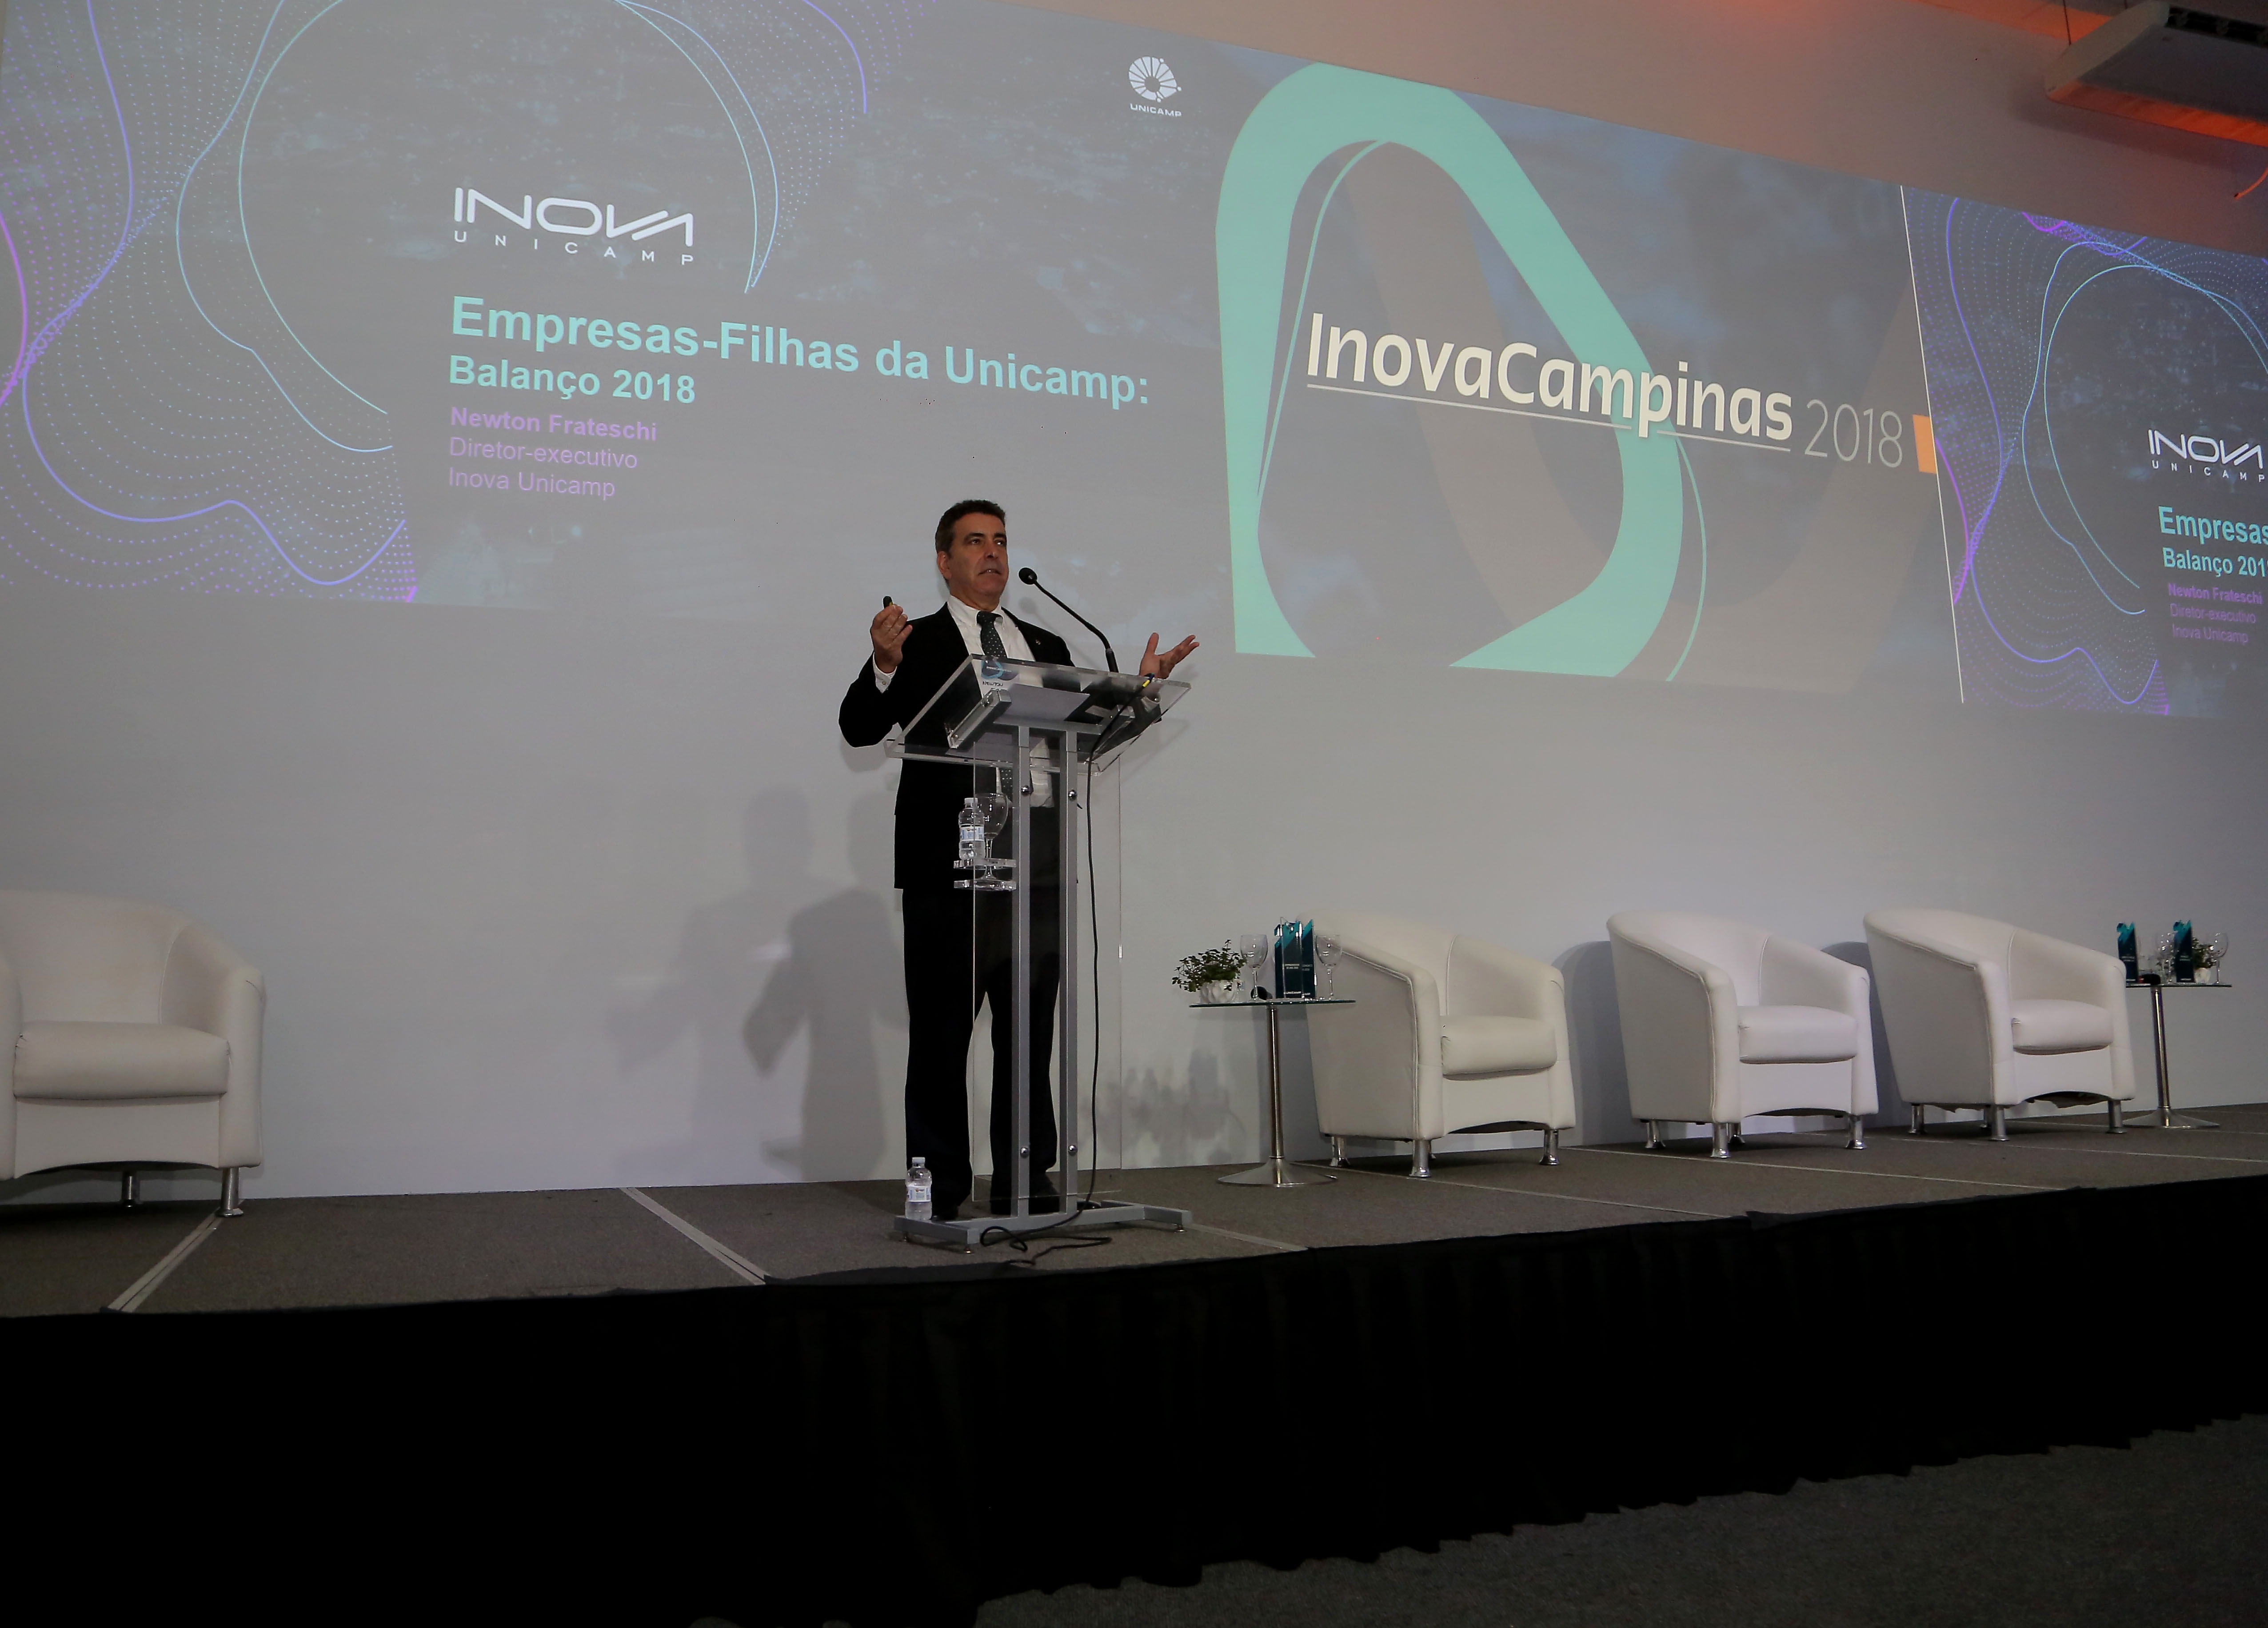 Diretor-executivo da Inova Unicamp, Newton Frateschi, em pé e realizando o balanço das empresas-filhas